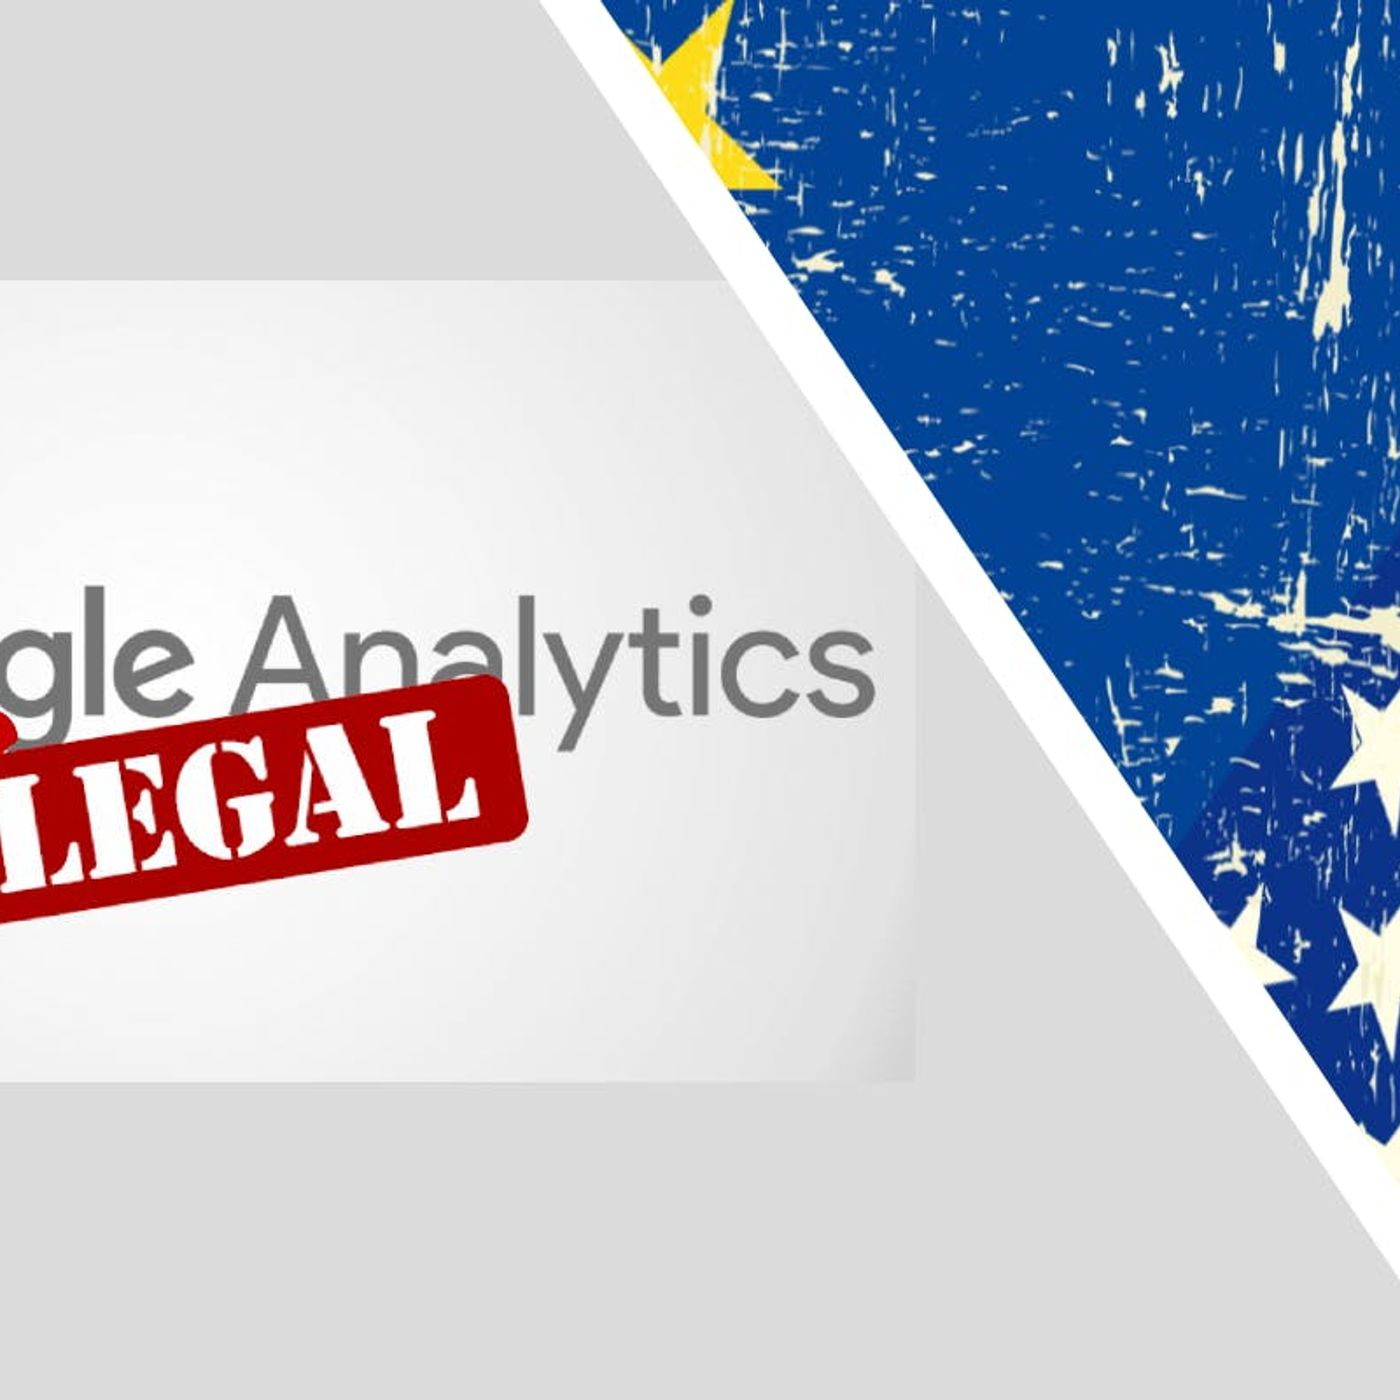 Google Analytics non è illegale in Europa